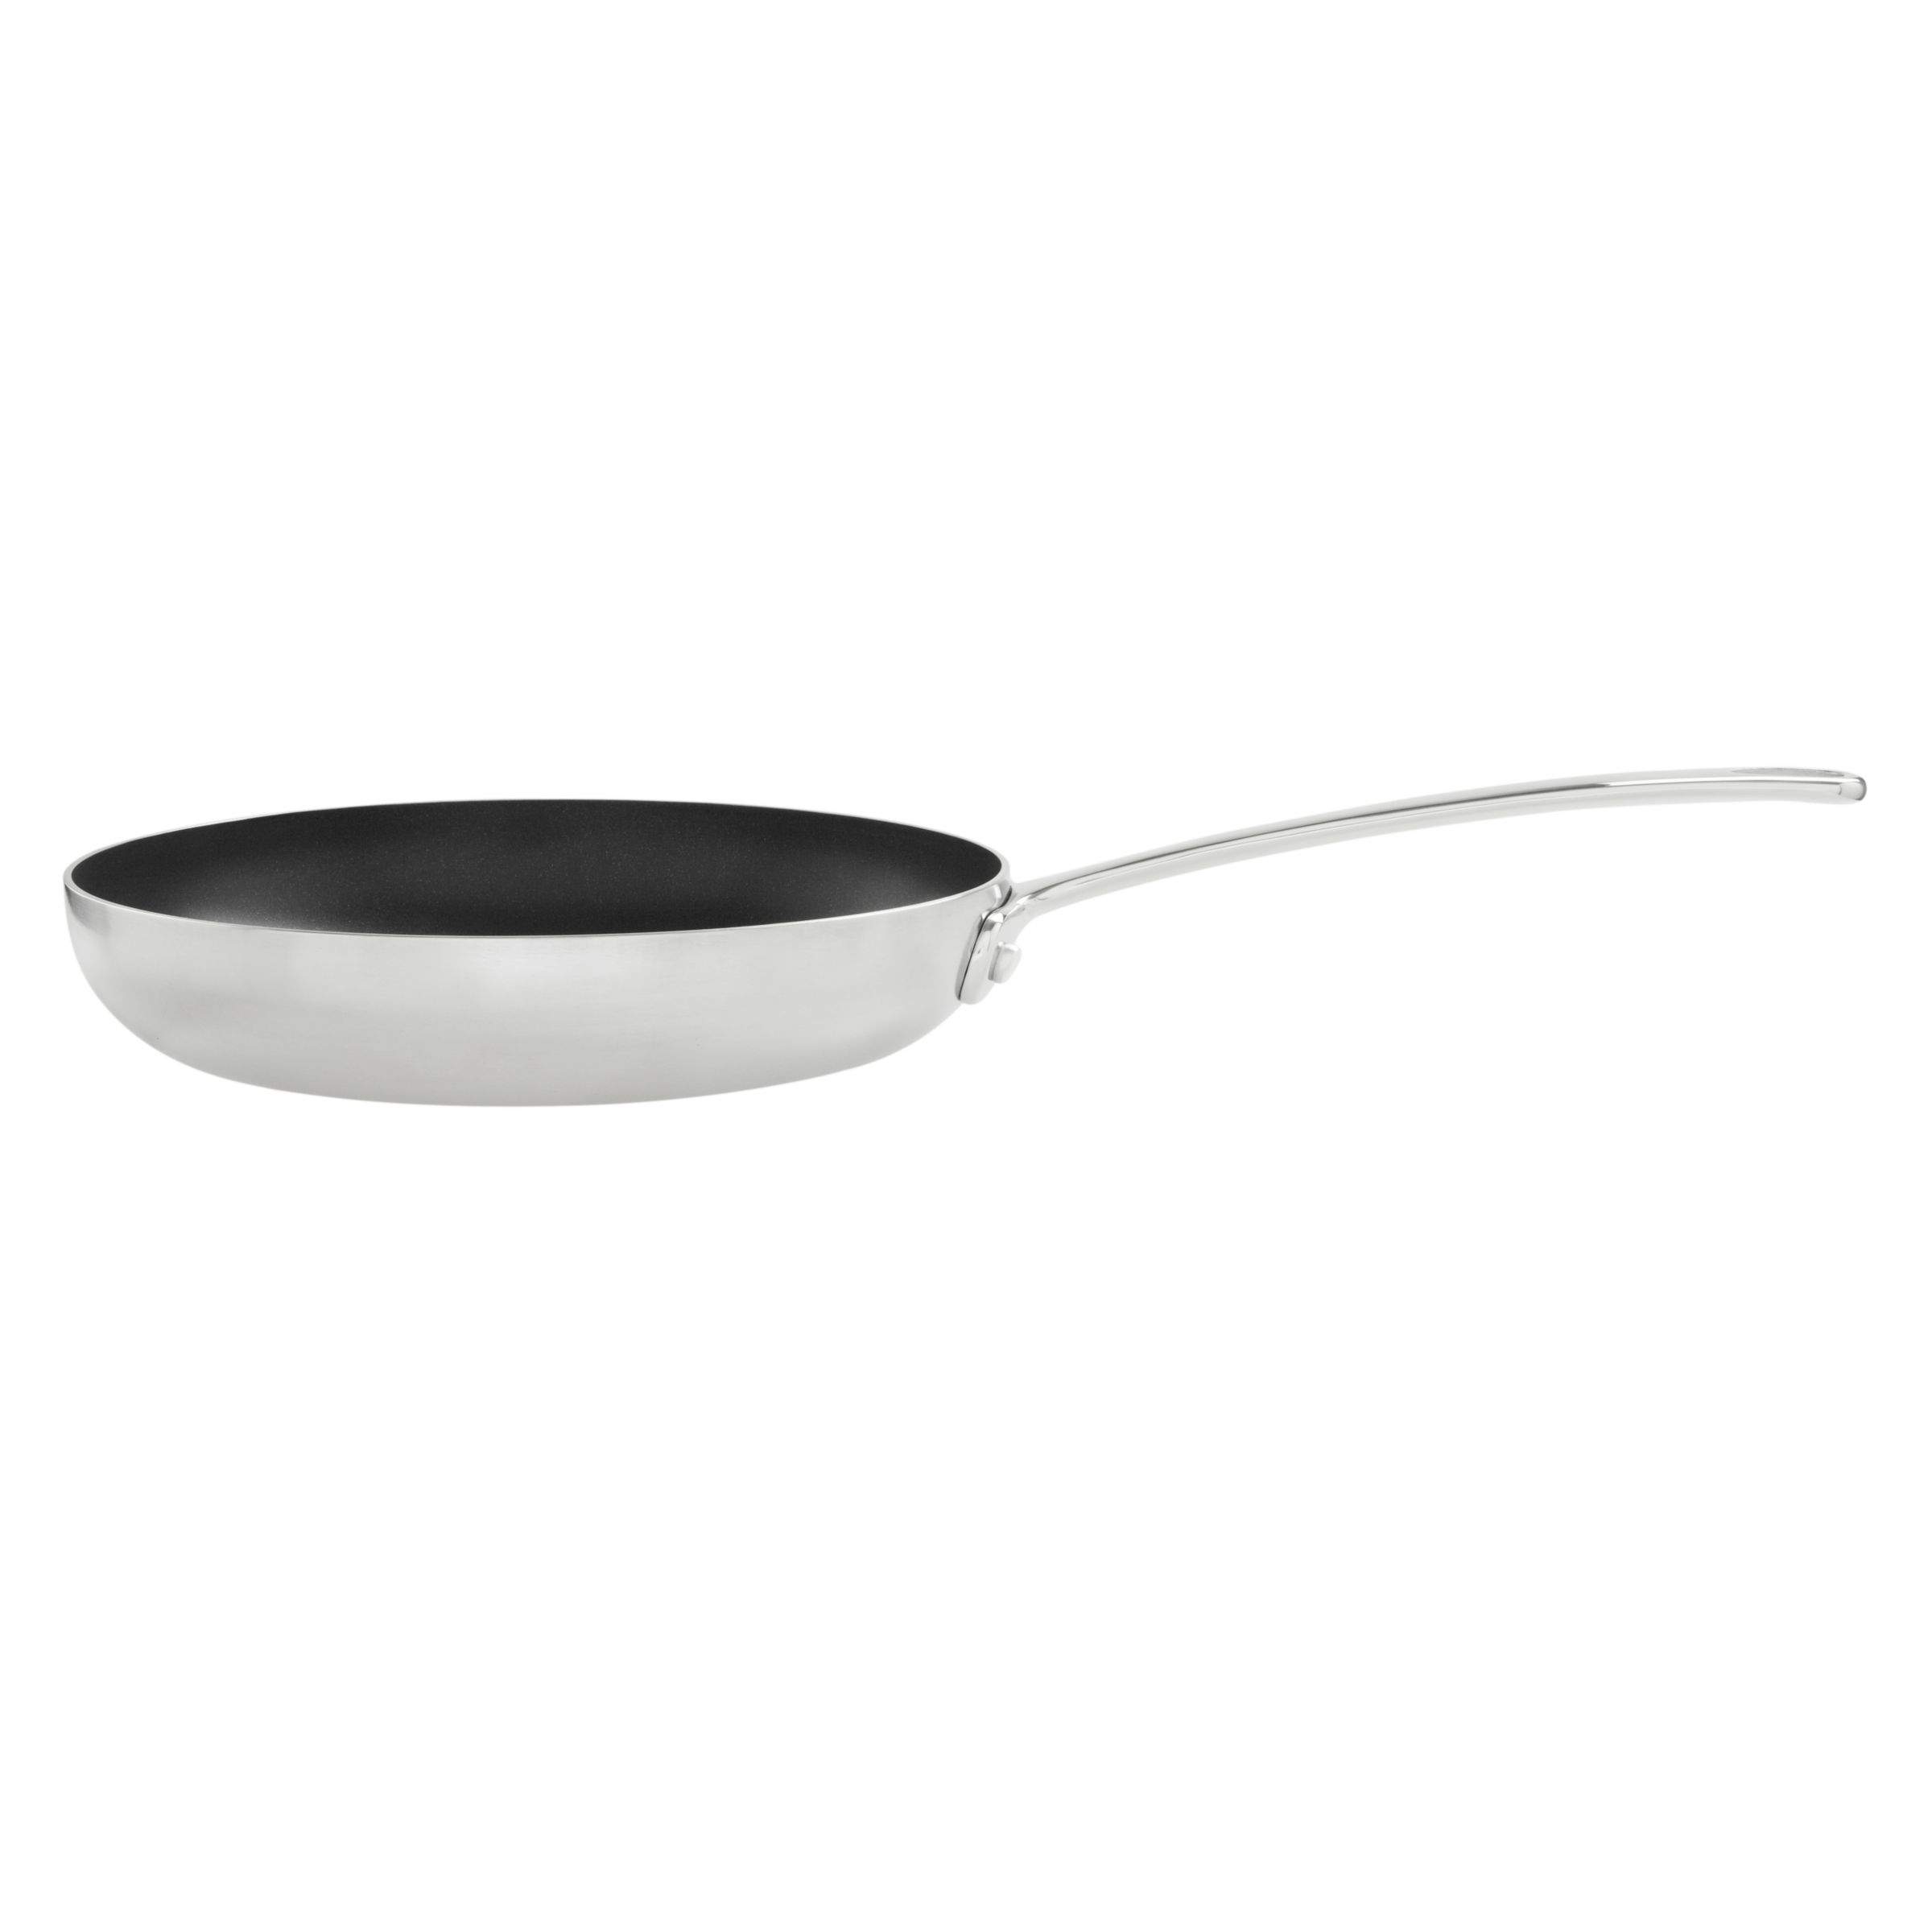 John Lewis 3-Ply Nonstick Frying Pan, 24cm